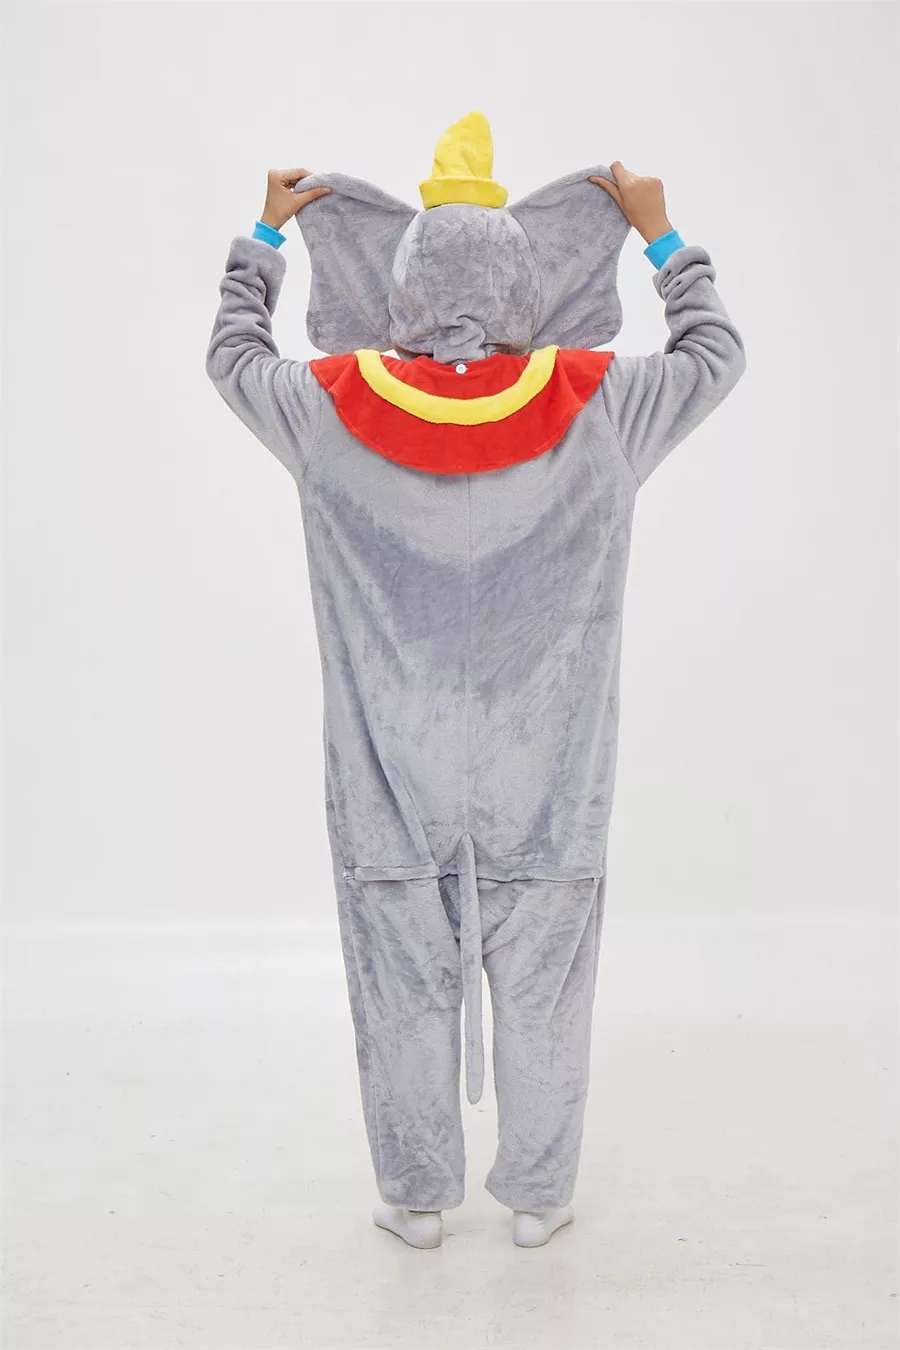 289002240 1 Pijama Adulto Dumbo, pijama de desenho animado, cosplay kigurumi, roupa de dormir